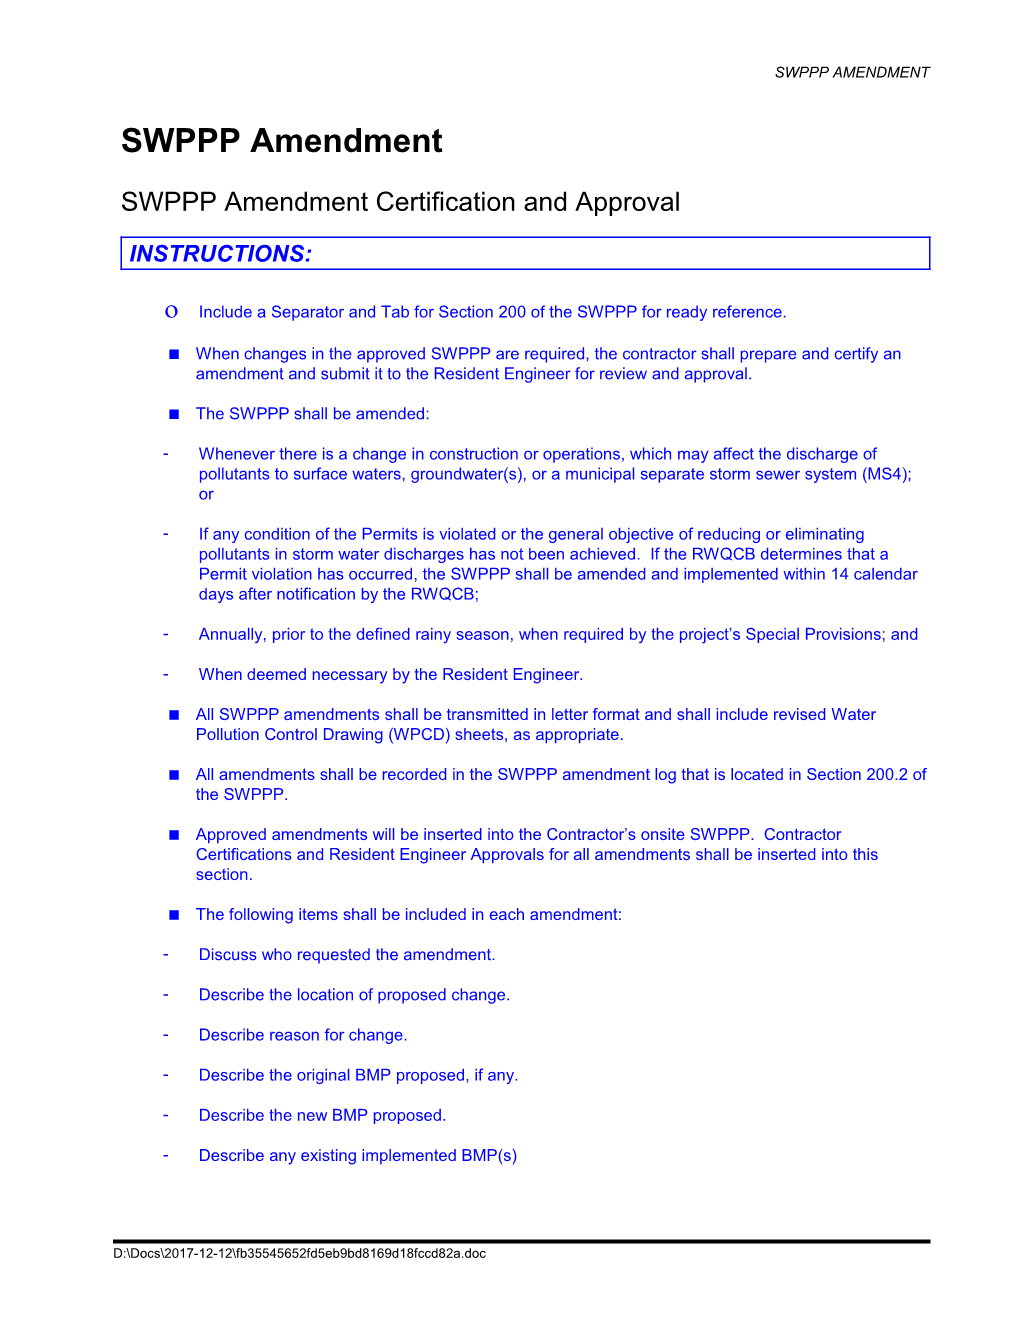 SWPPP Amendment Form